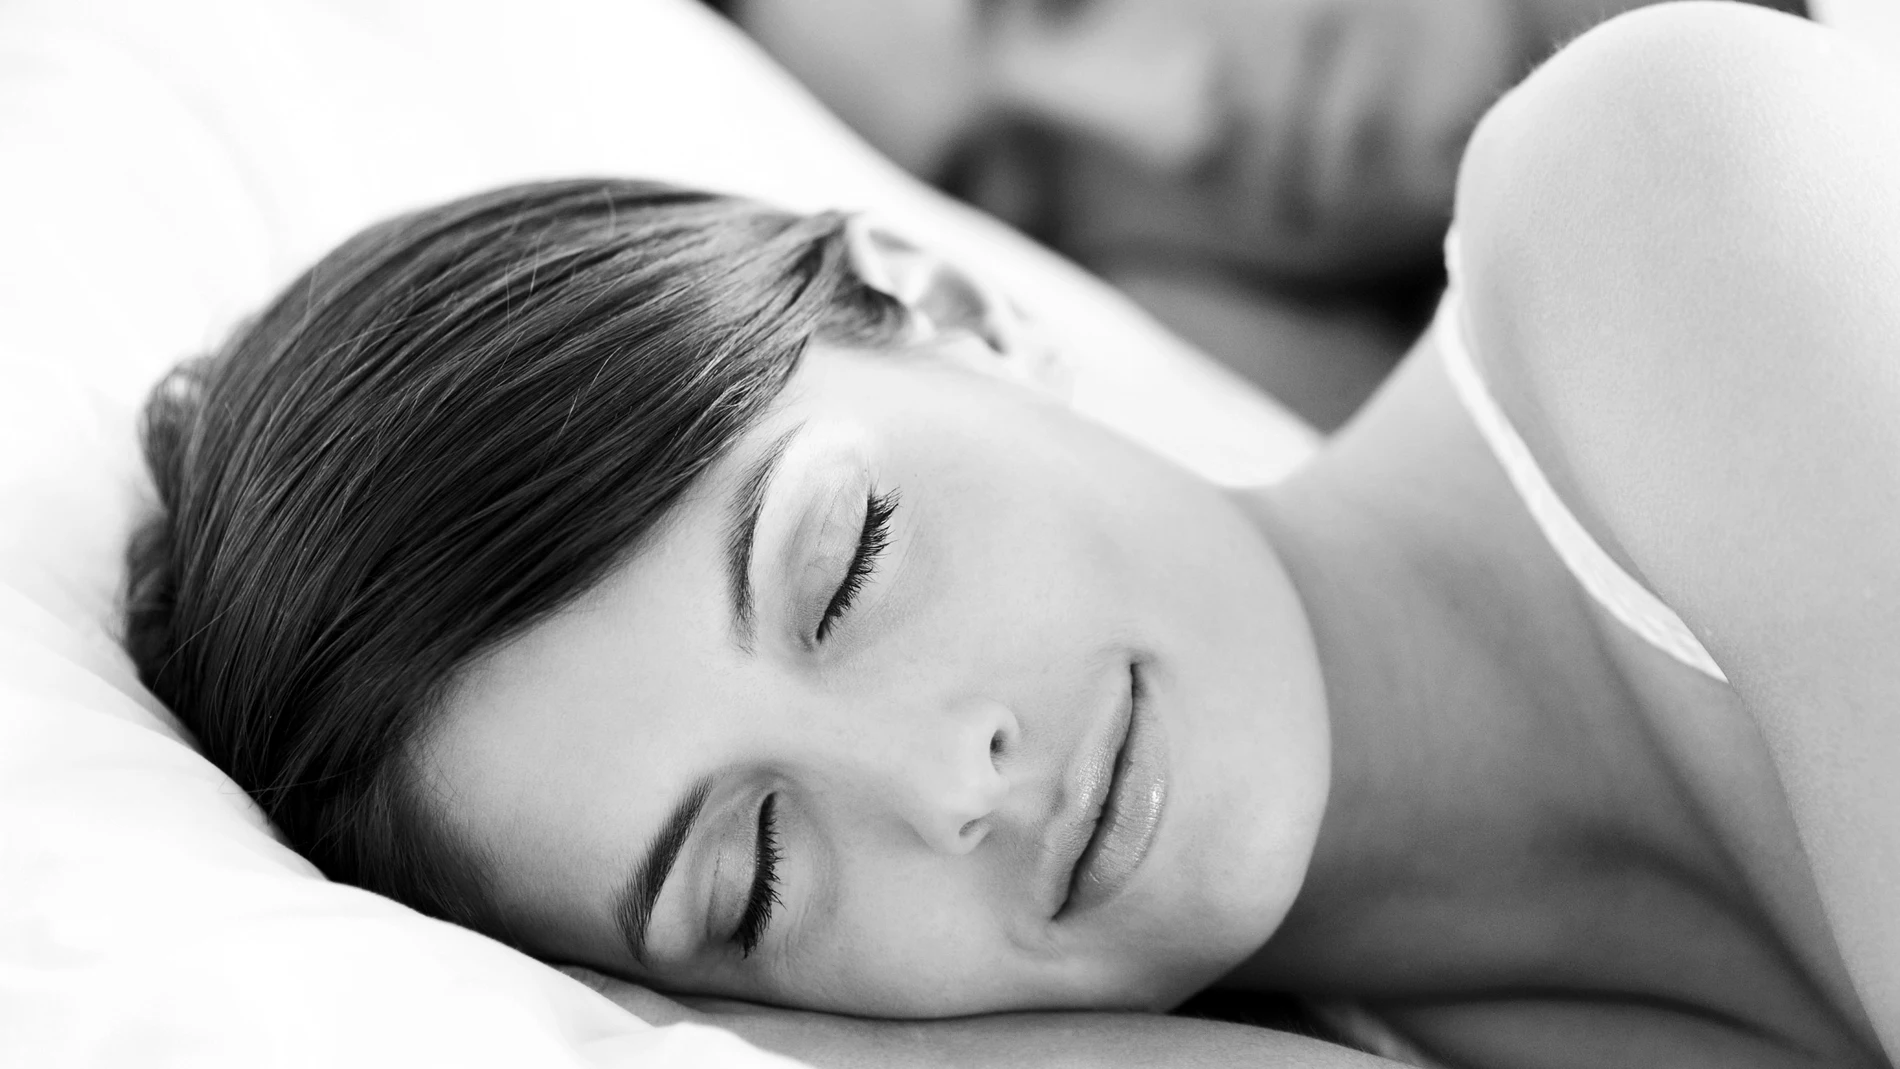 La luz de los móviles inhibe la producción de melatonina, la hormona que nos provoca el sueño